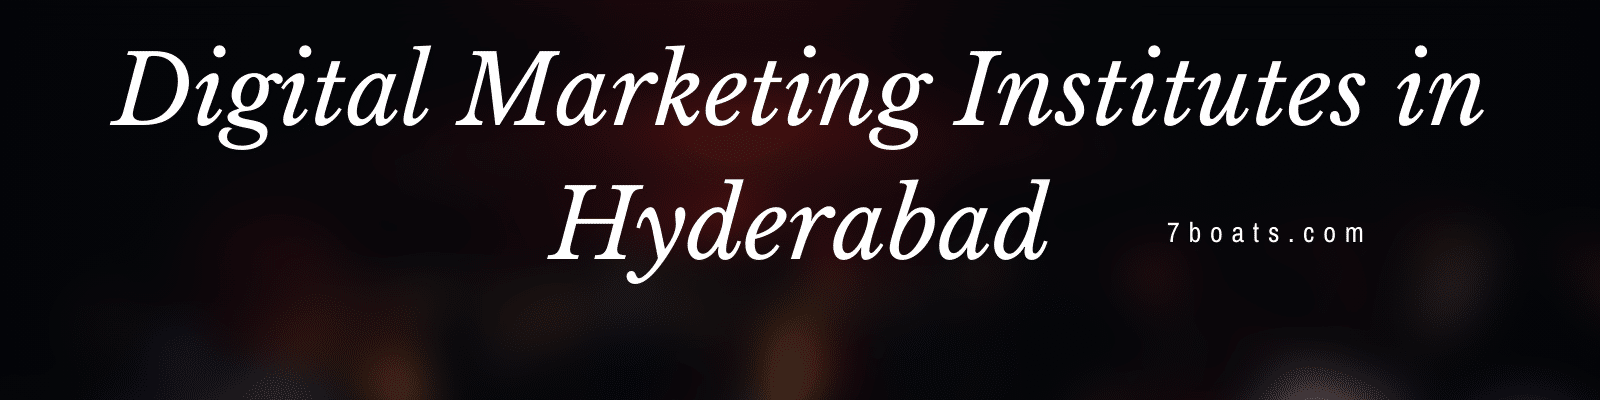 Top Digital Marketing Training Institutes in Hyderabad – Best Digital Marketing Courses in Hyderabad